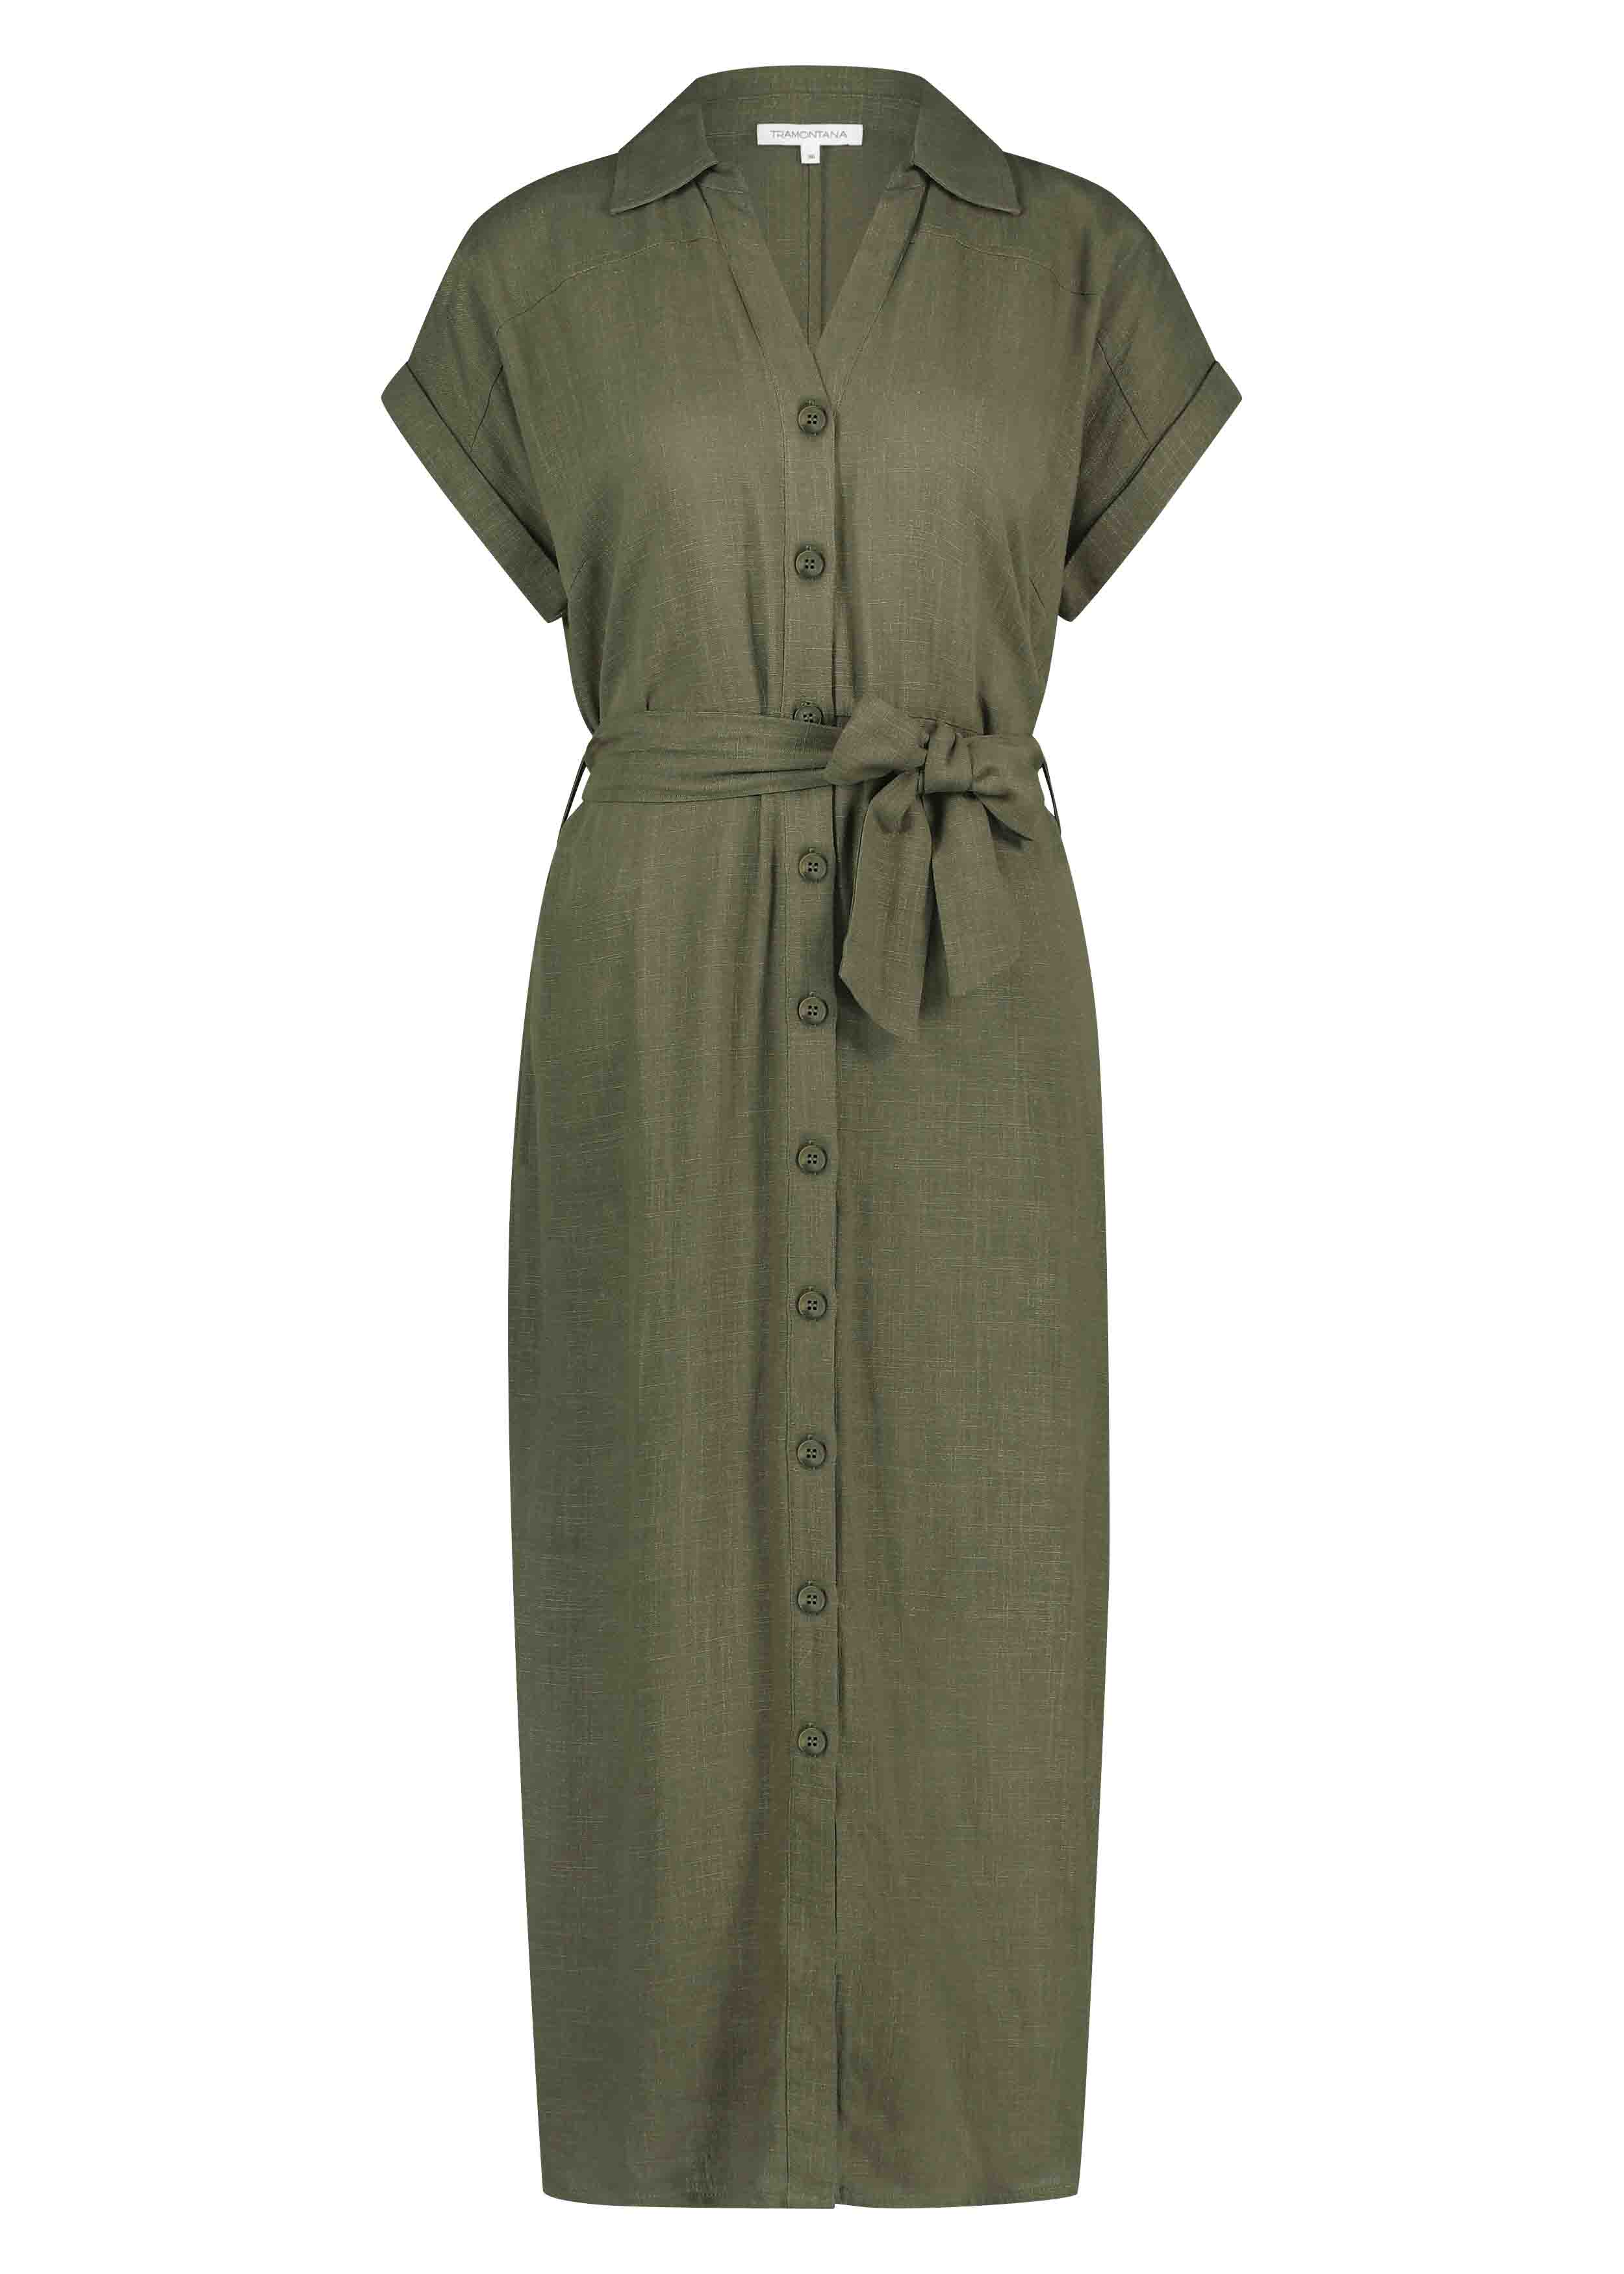 Tramontana Female Jurken C03-12-501 Dress Shirt Belted